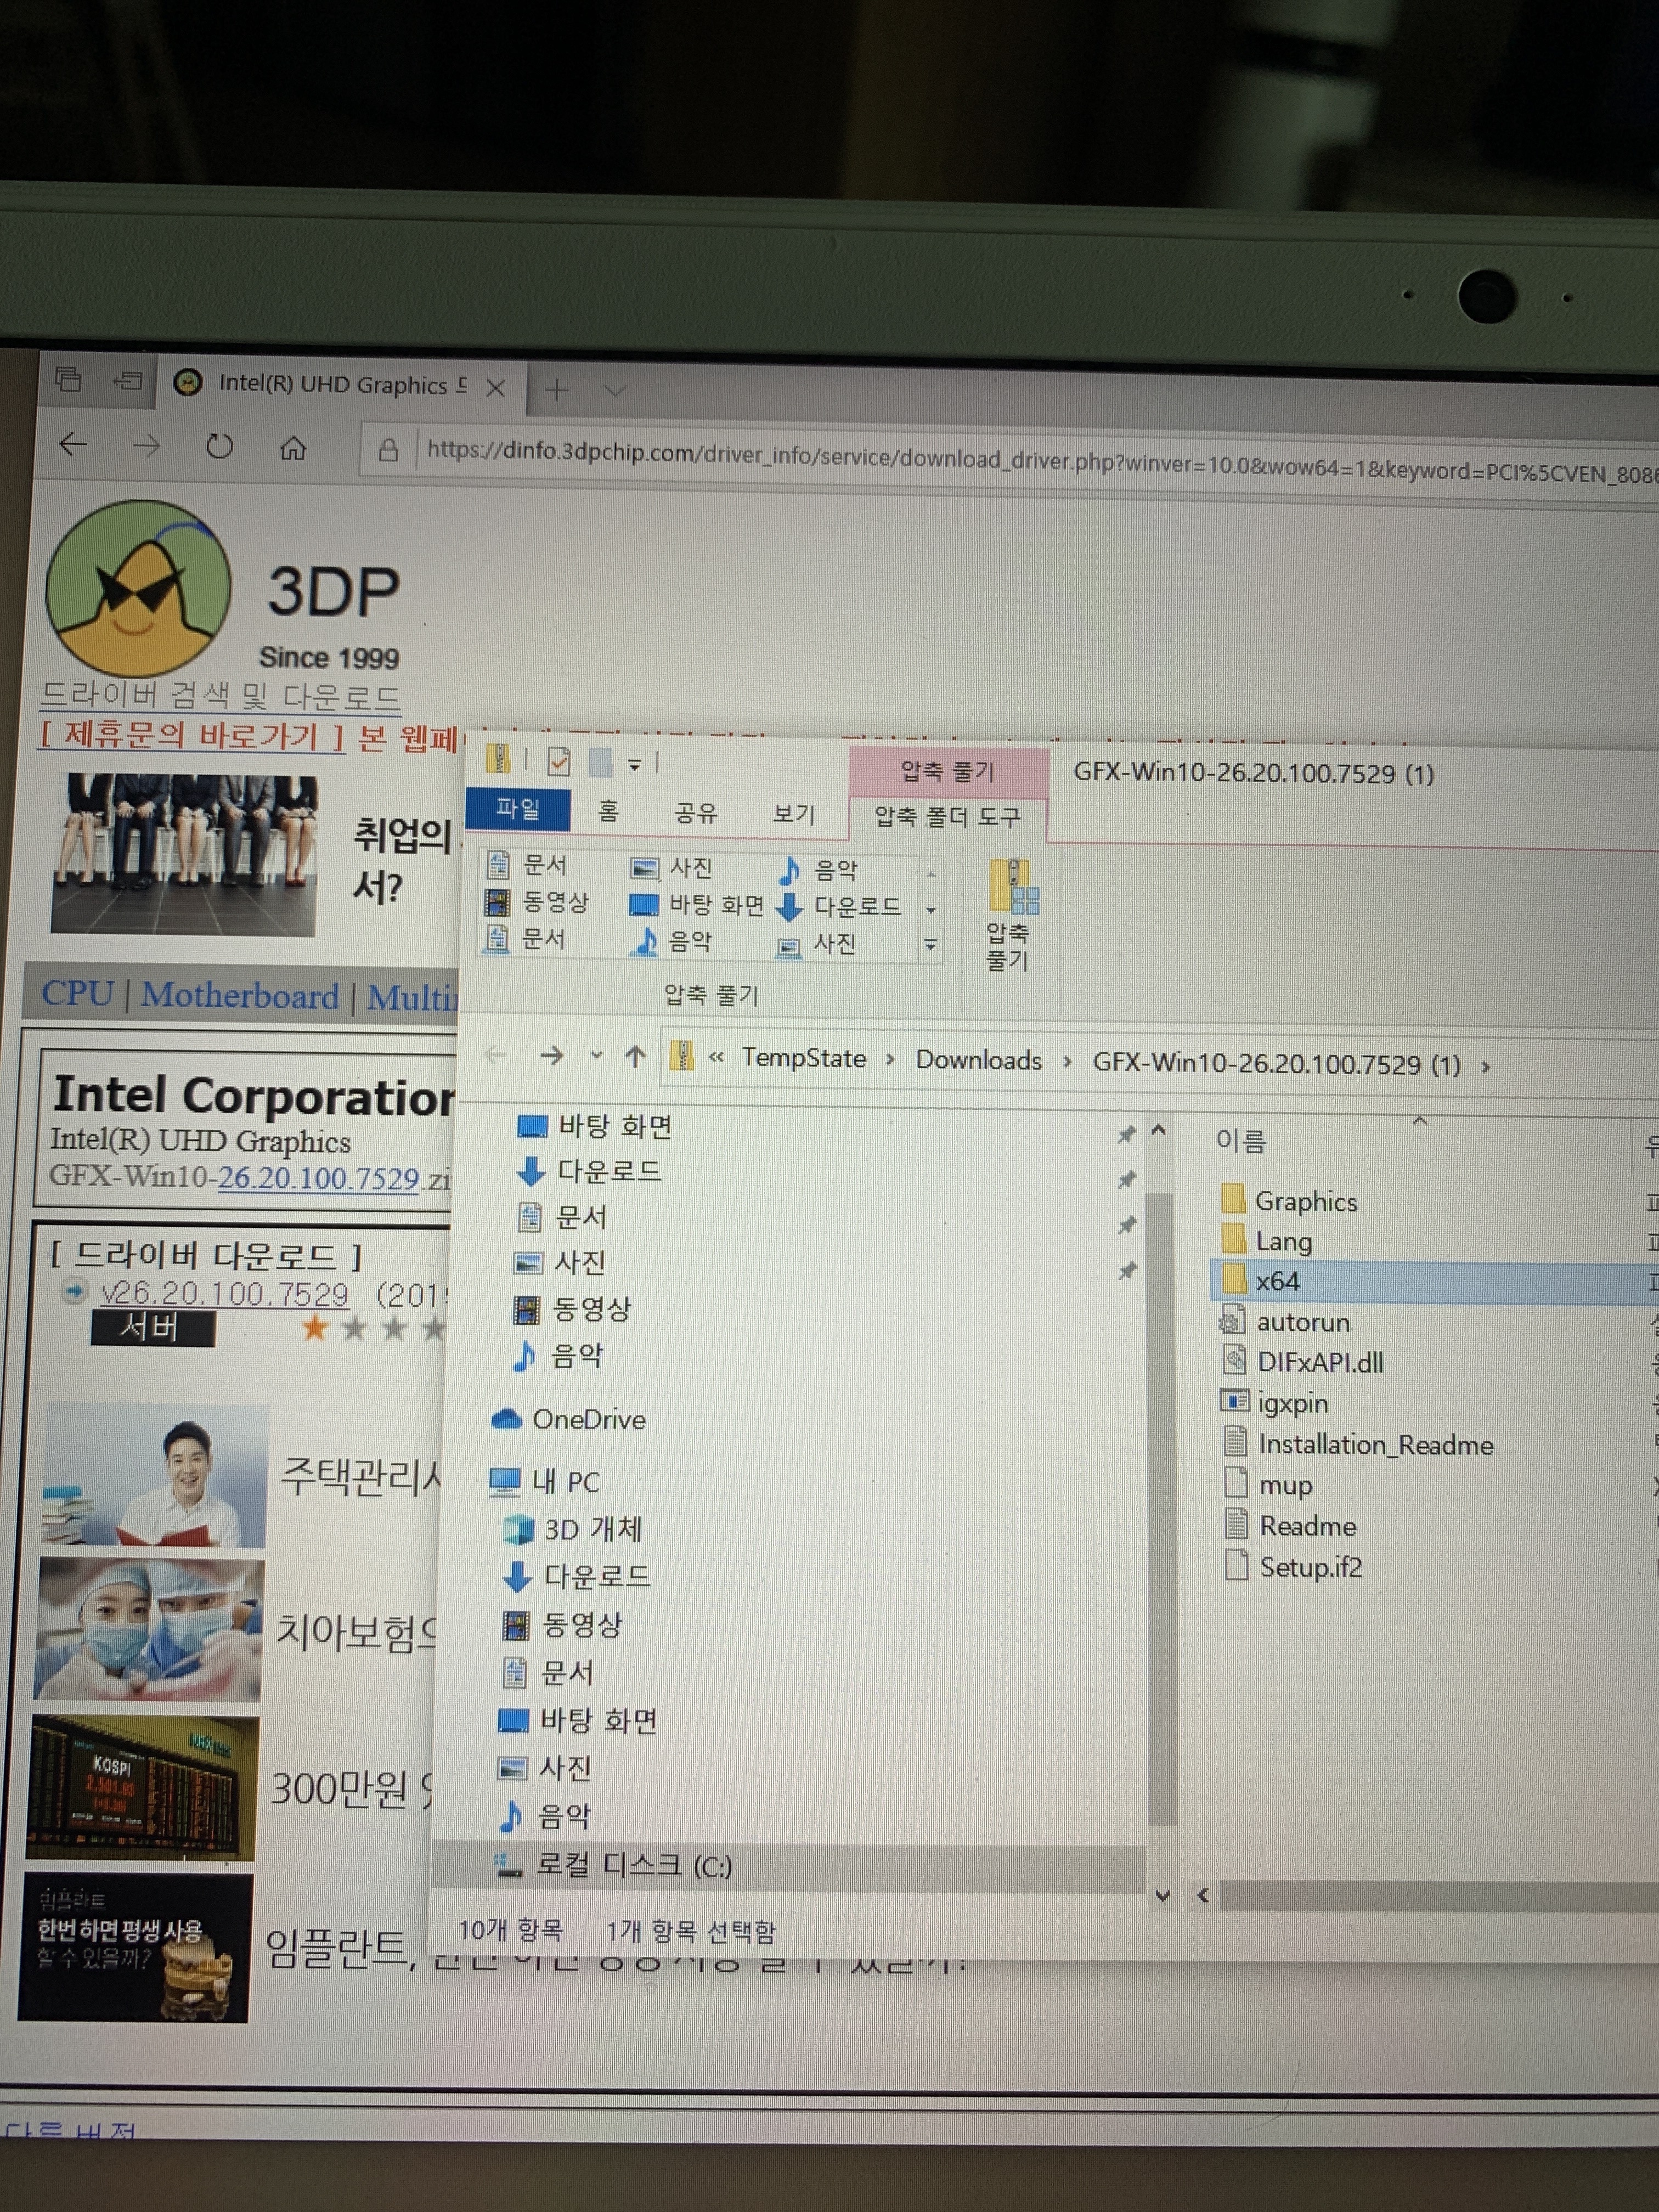 downloading 3DP Chip 23.07